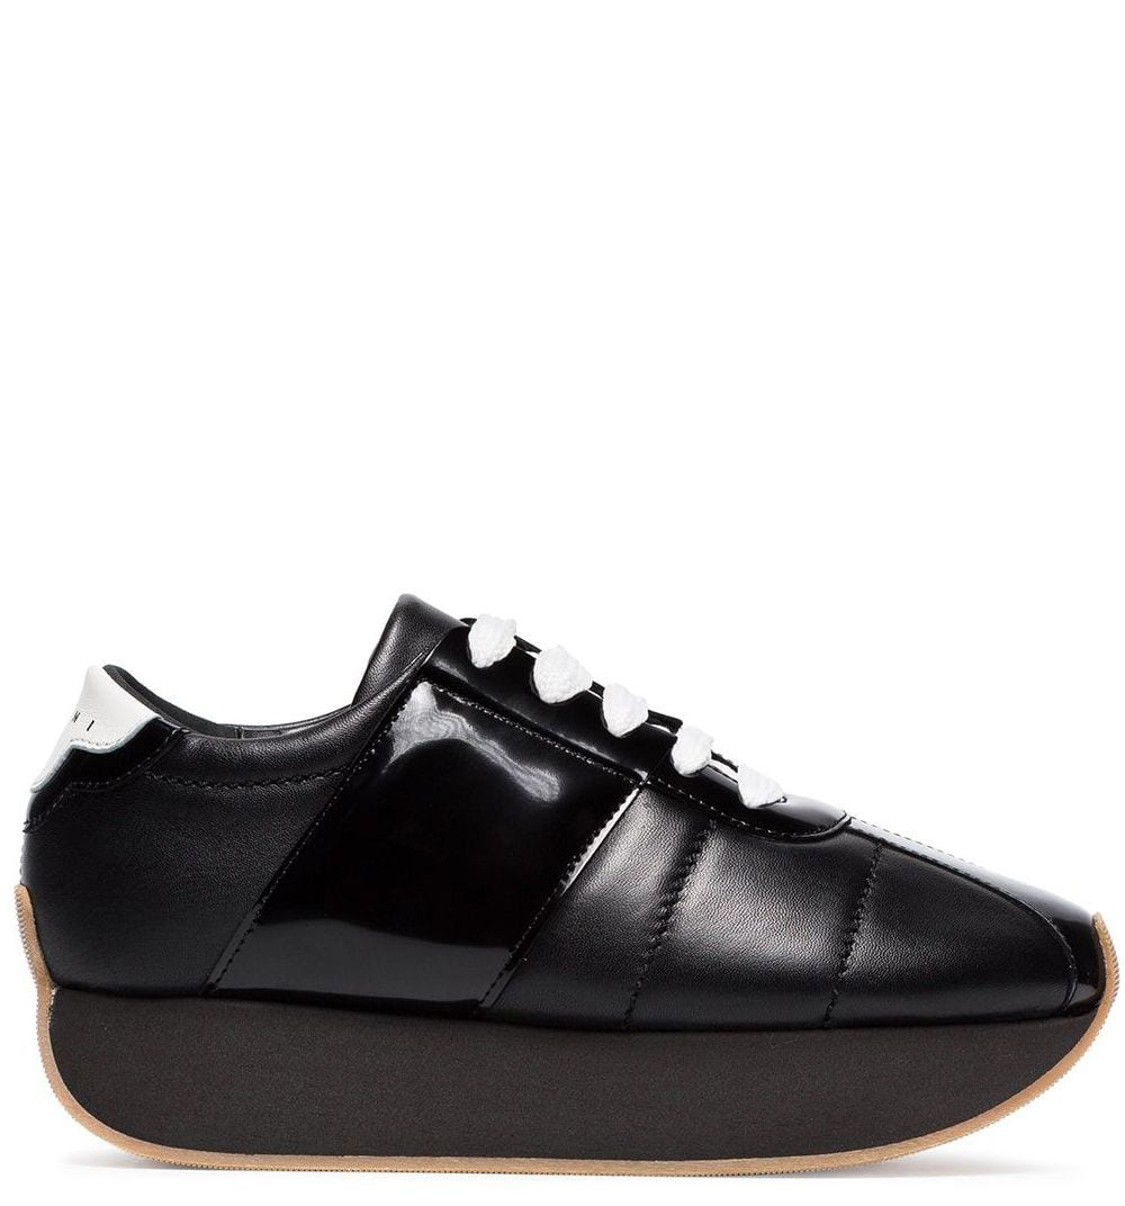 shop Marni Sales Scarpe: Sneakers Marni, modello big foot, in pelle nera, suola in gomma nera, stringhe a contrasto bianche.

Composizione: 100% pelle.
Suola: 100% gomma.
 number 1620